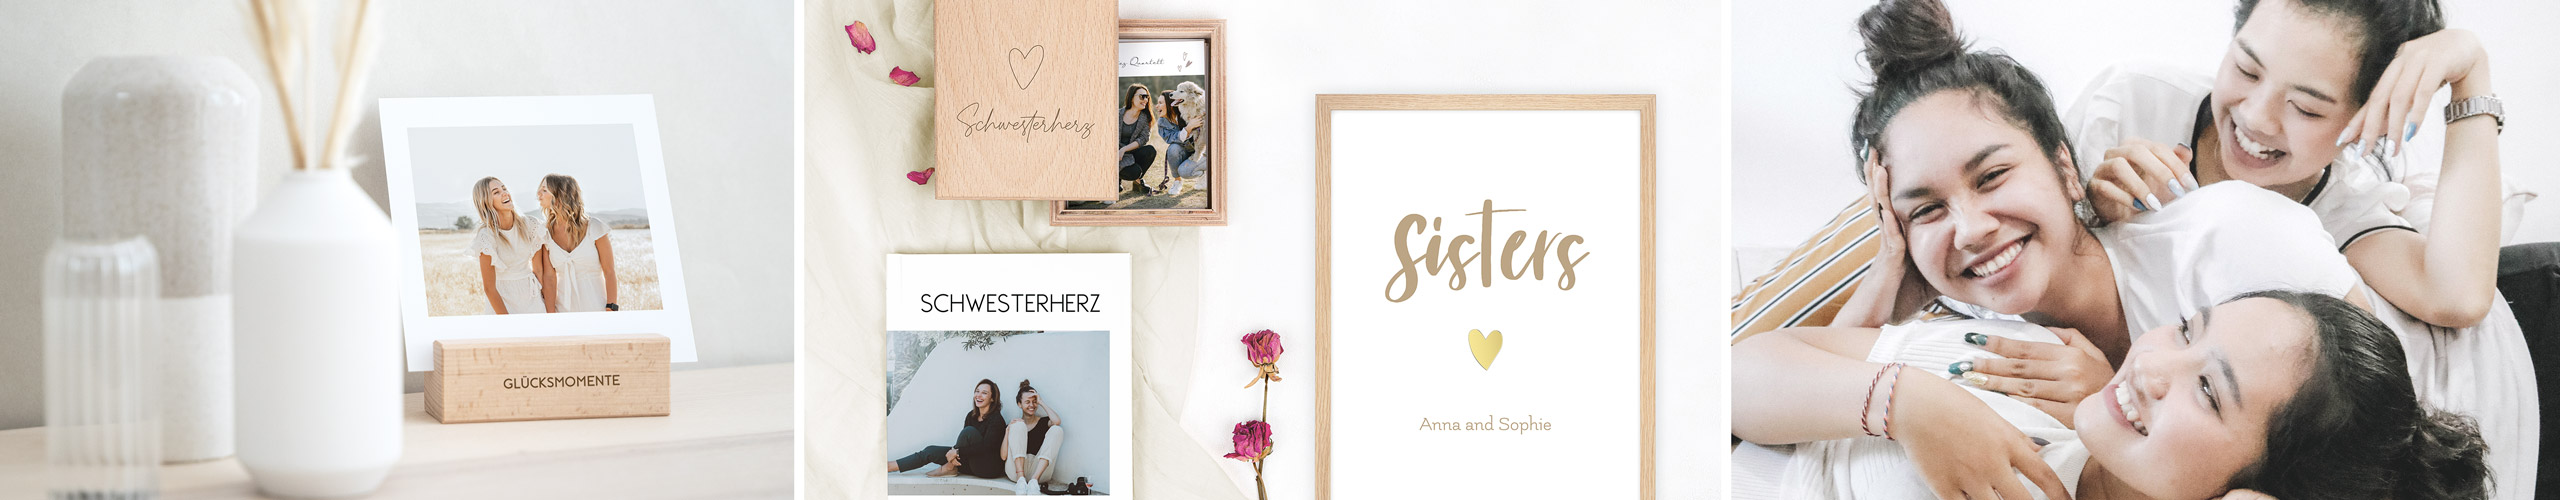 Wandbild, Holzbox und Tischaufsteller mit Fotos als Geschenke für die Schwester